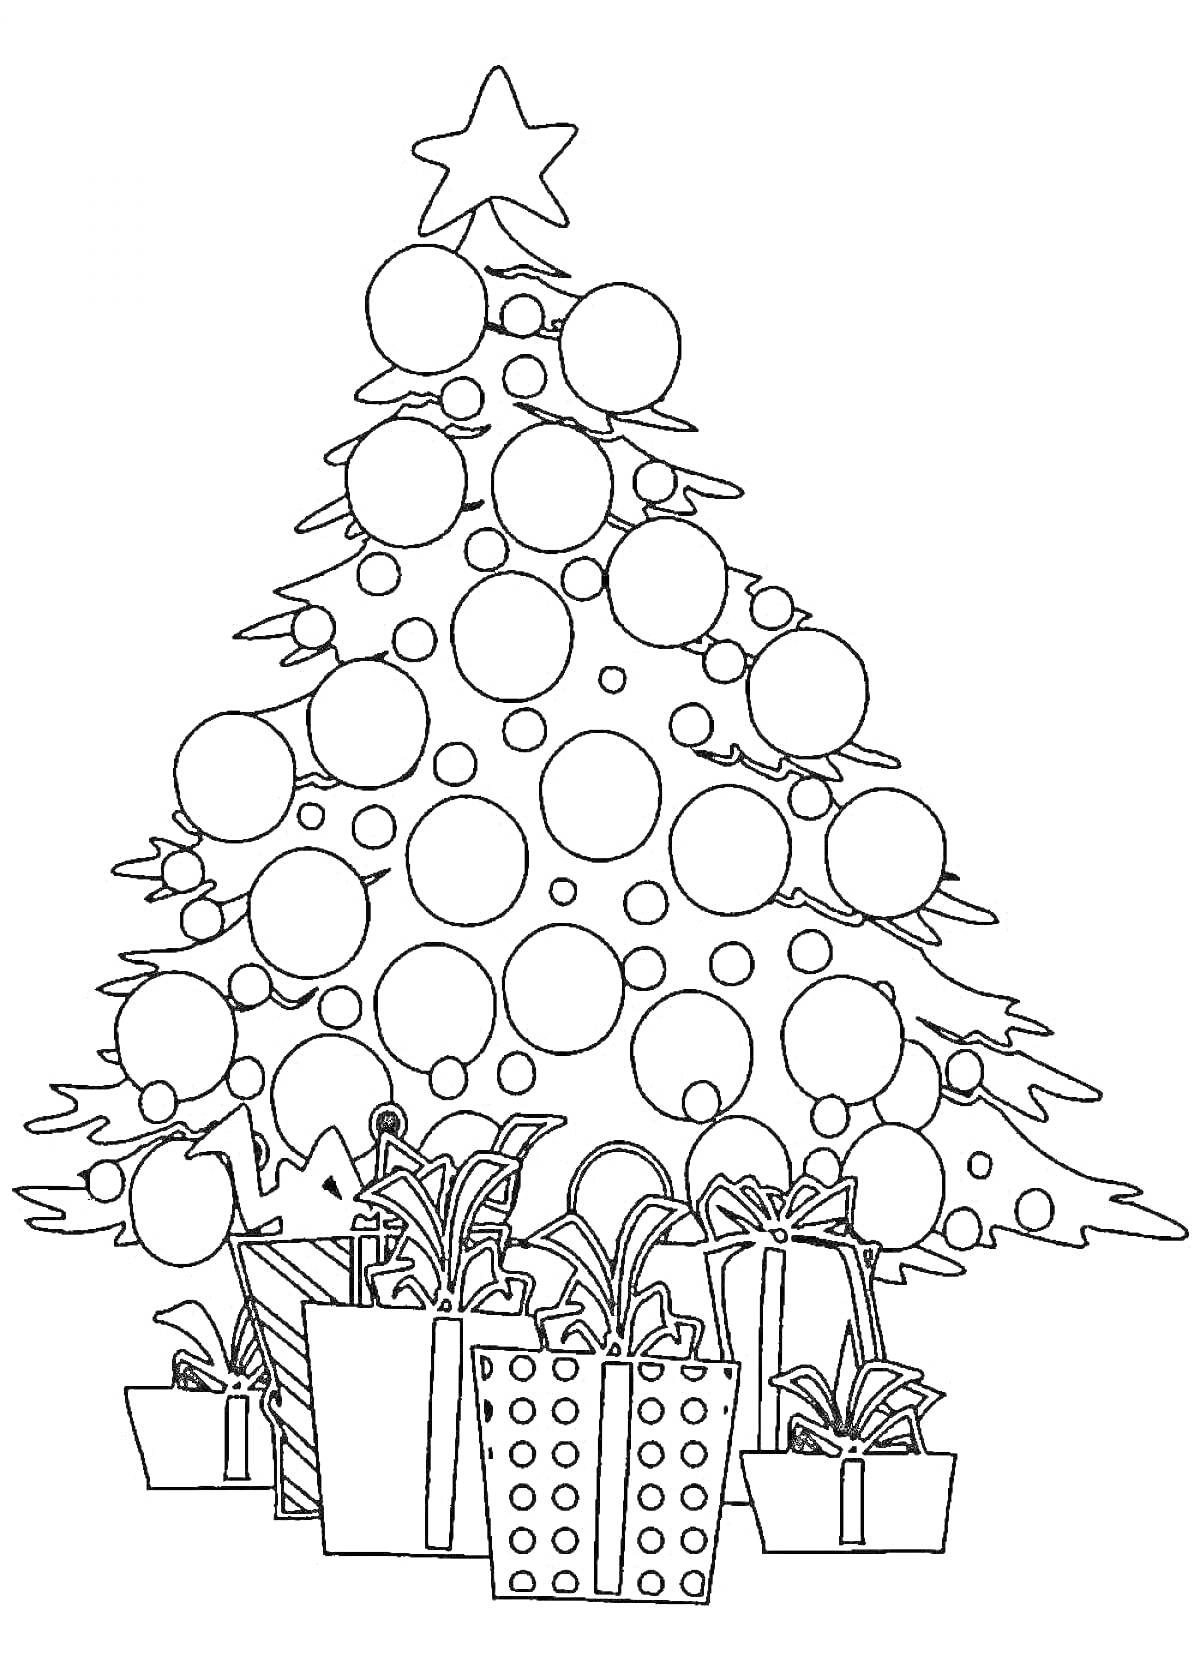 РаскраскаНовогодняя елка с шарами и подарками